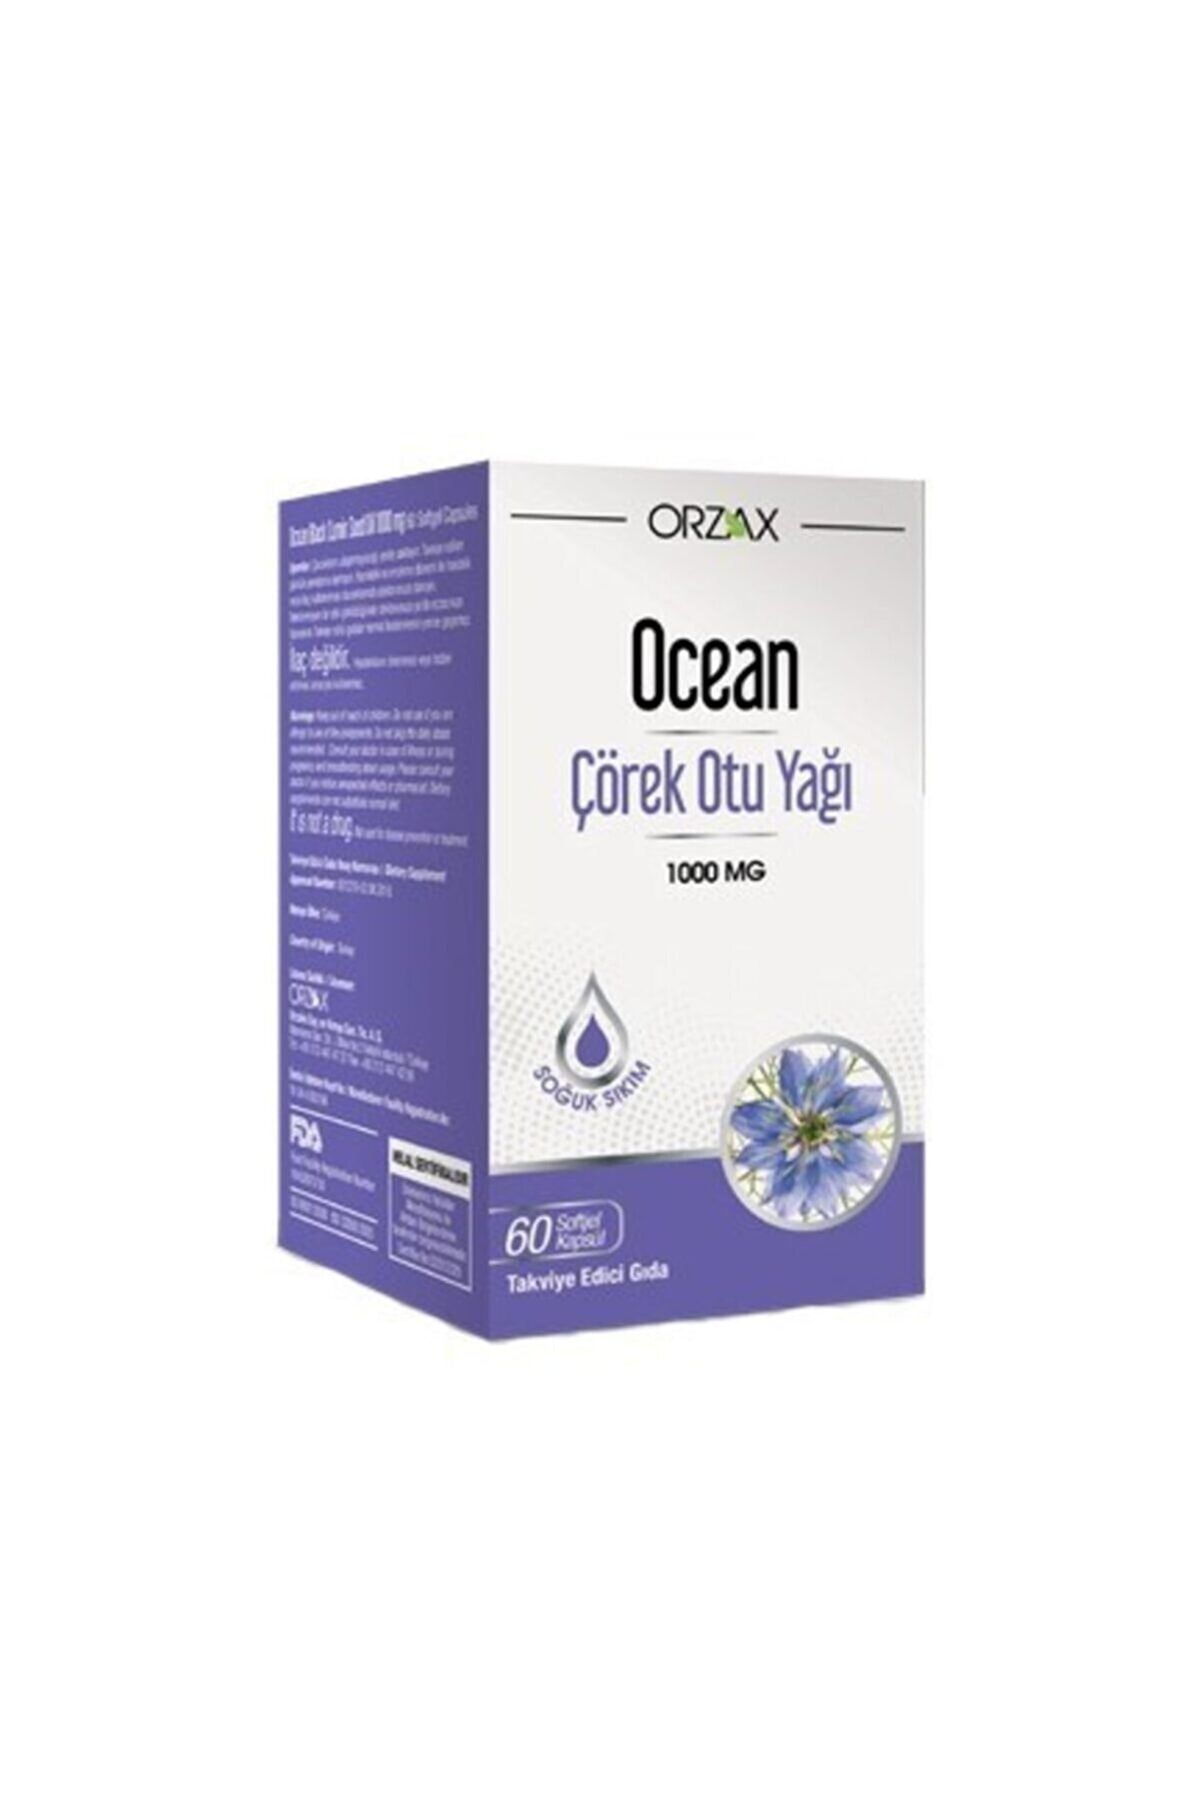 Ocean Çörek Otu Yağı 1000 Mg 60 Kapsül (dcn101)